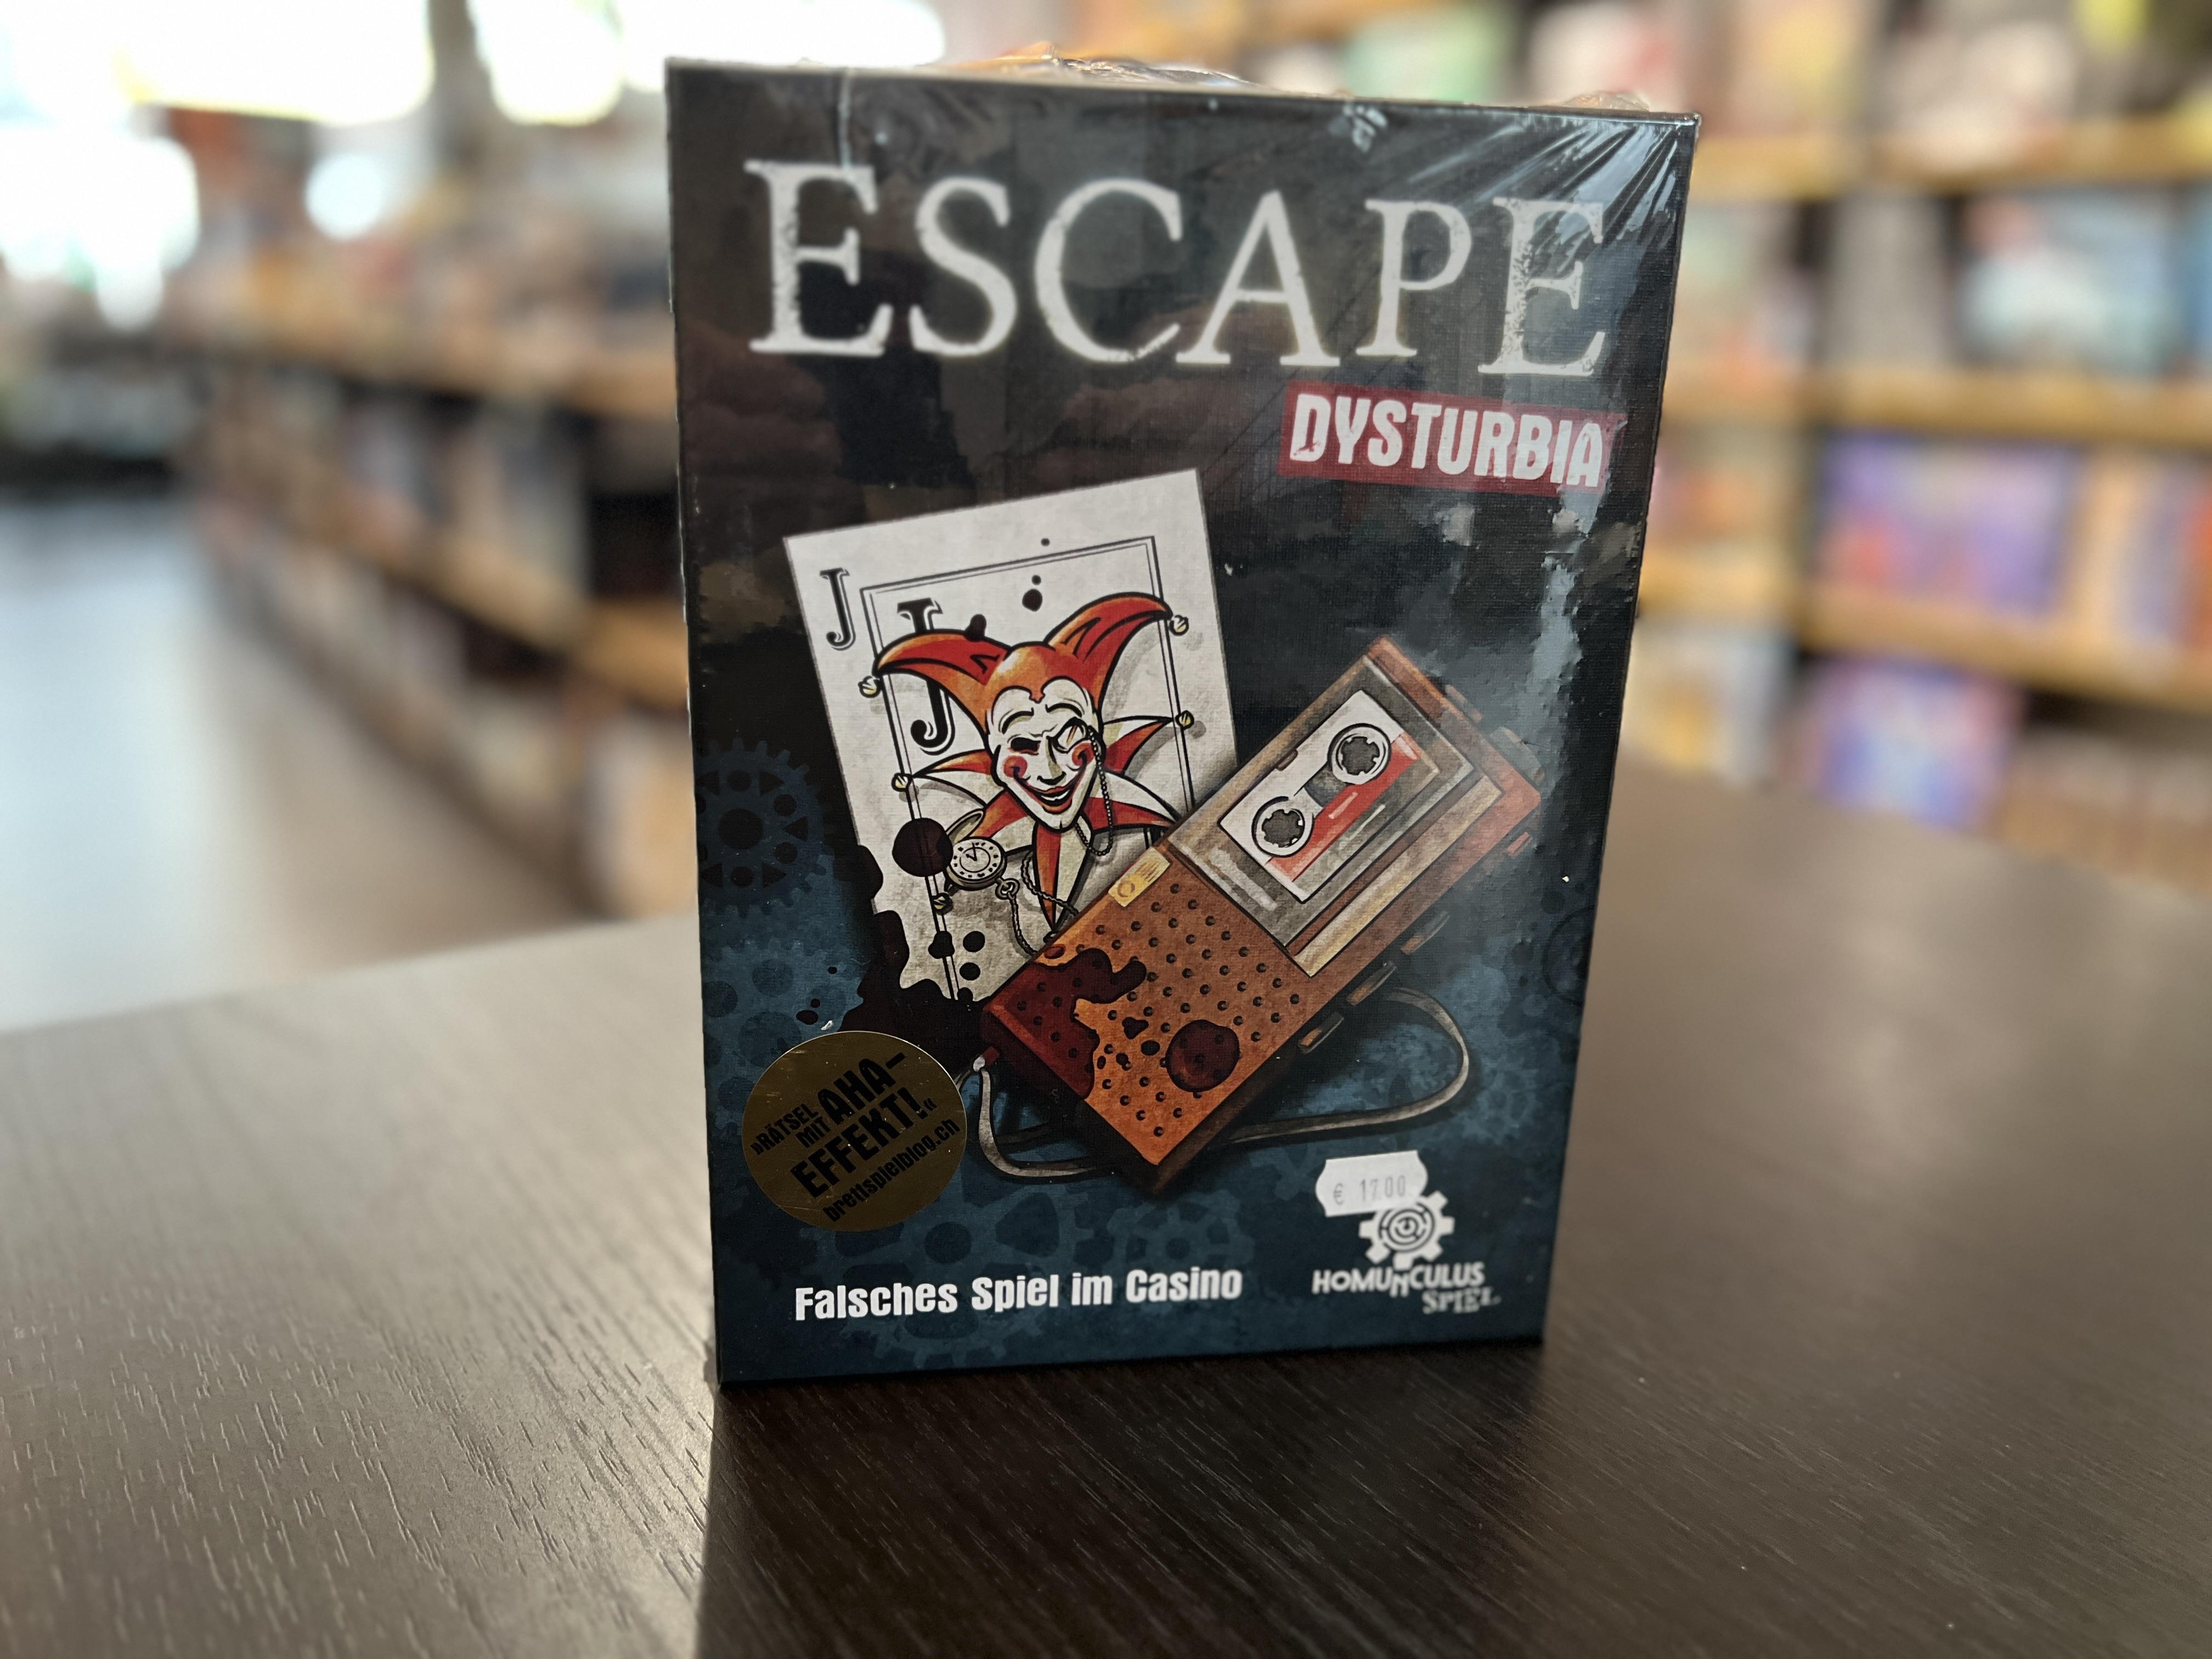 Escape Disturbia - Falsches Spiel im Casino